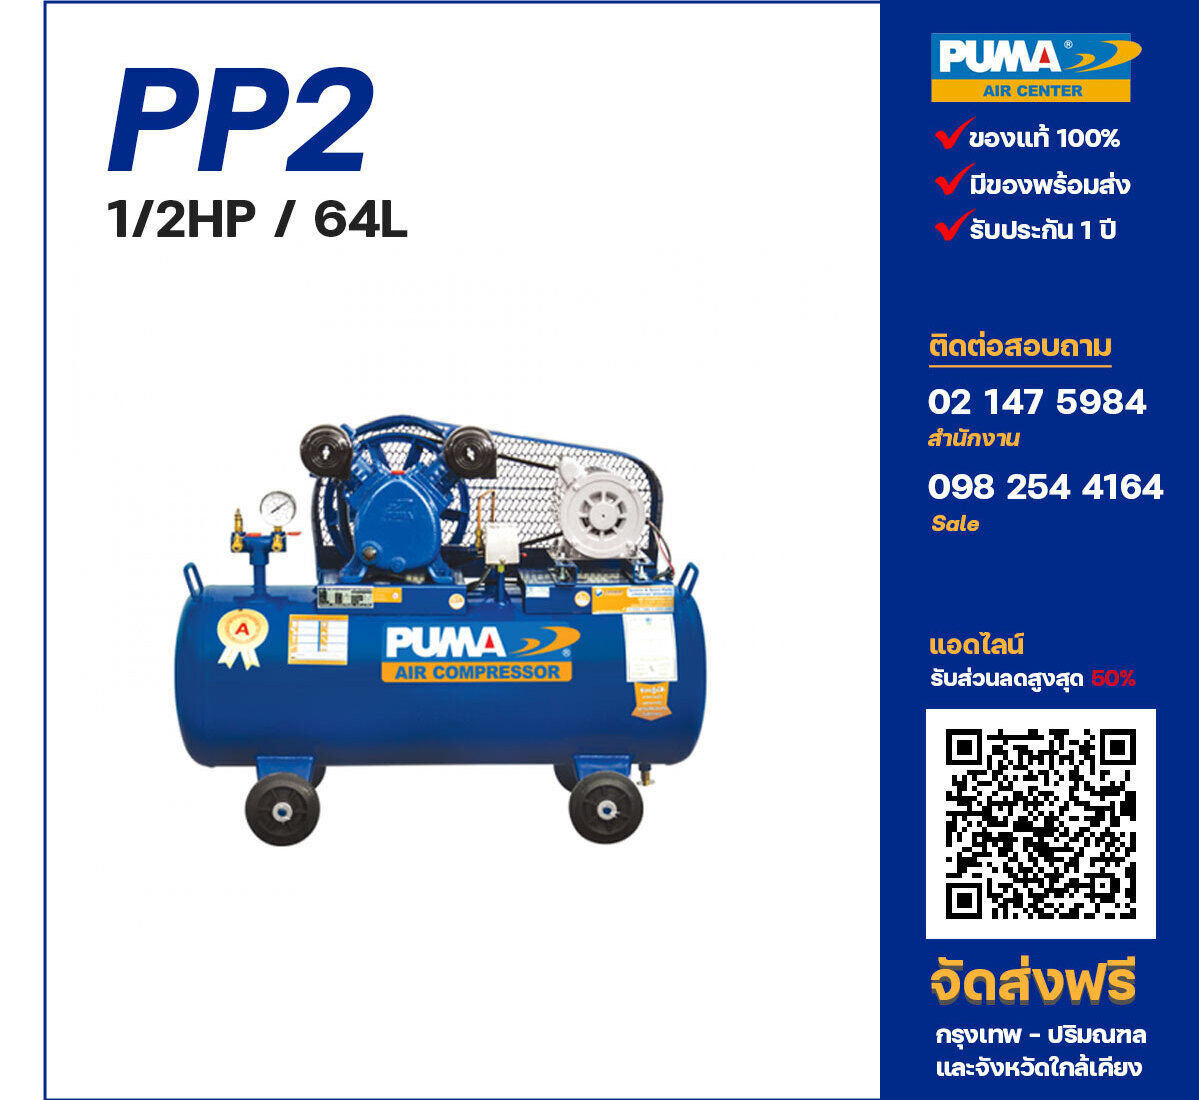 ปั๊มลมพูม่า PUMA PP2-PPM220V ปั๊มลมลูกสูบ ขนาด 2 สูบ 1/2 แรงม้า 64 ลิตร PUMA พร้อมมอเตอร์ PUMA ไฟ 220V ส่งฟรี กรุงเทพฯ-ปริมณฑล รับประกัน 1 ปี